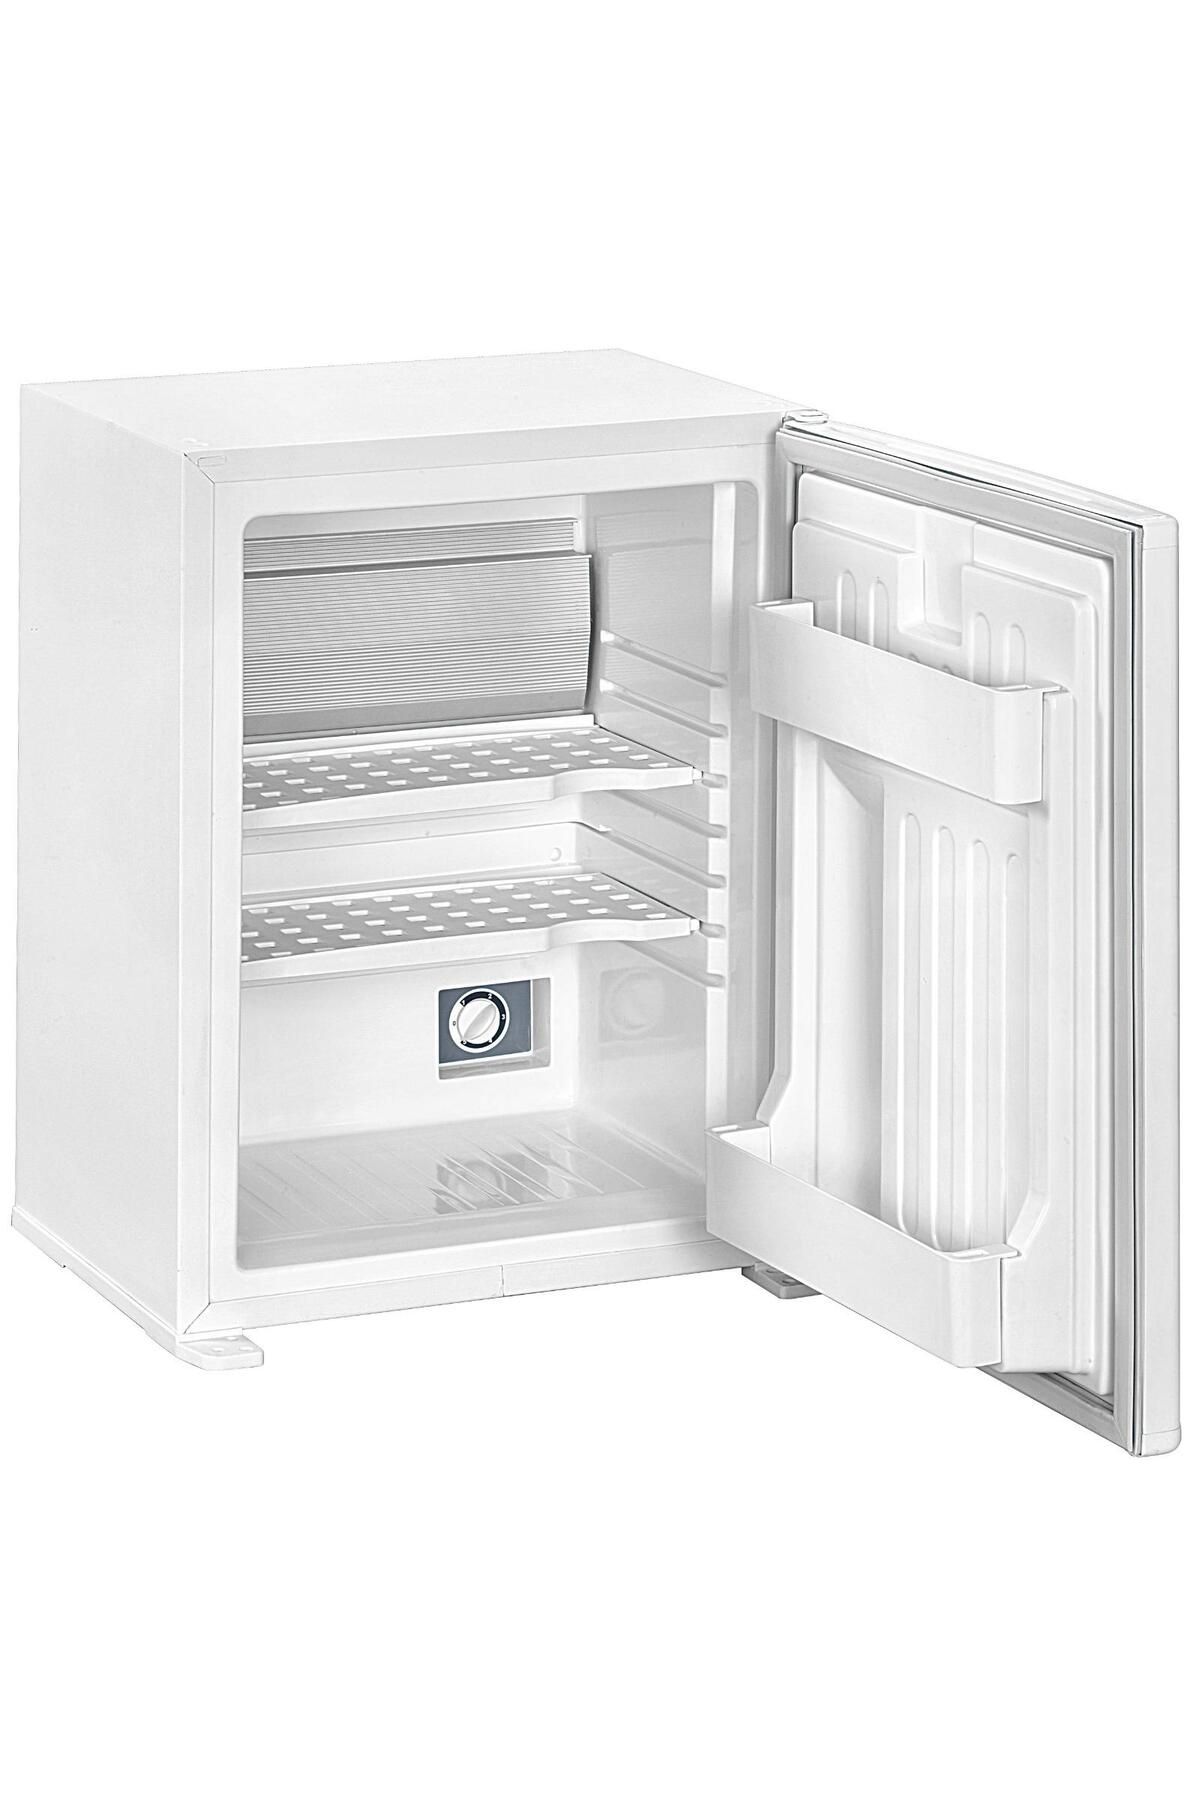 ISM Beyaz Blok Kapı 30litre Minibar Mini Buzdolabı Sm-30